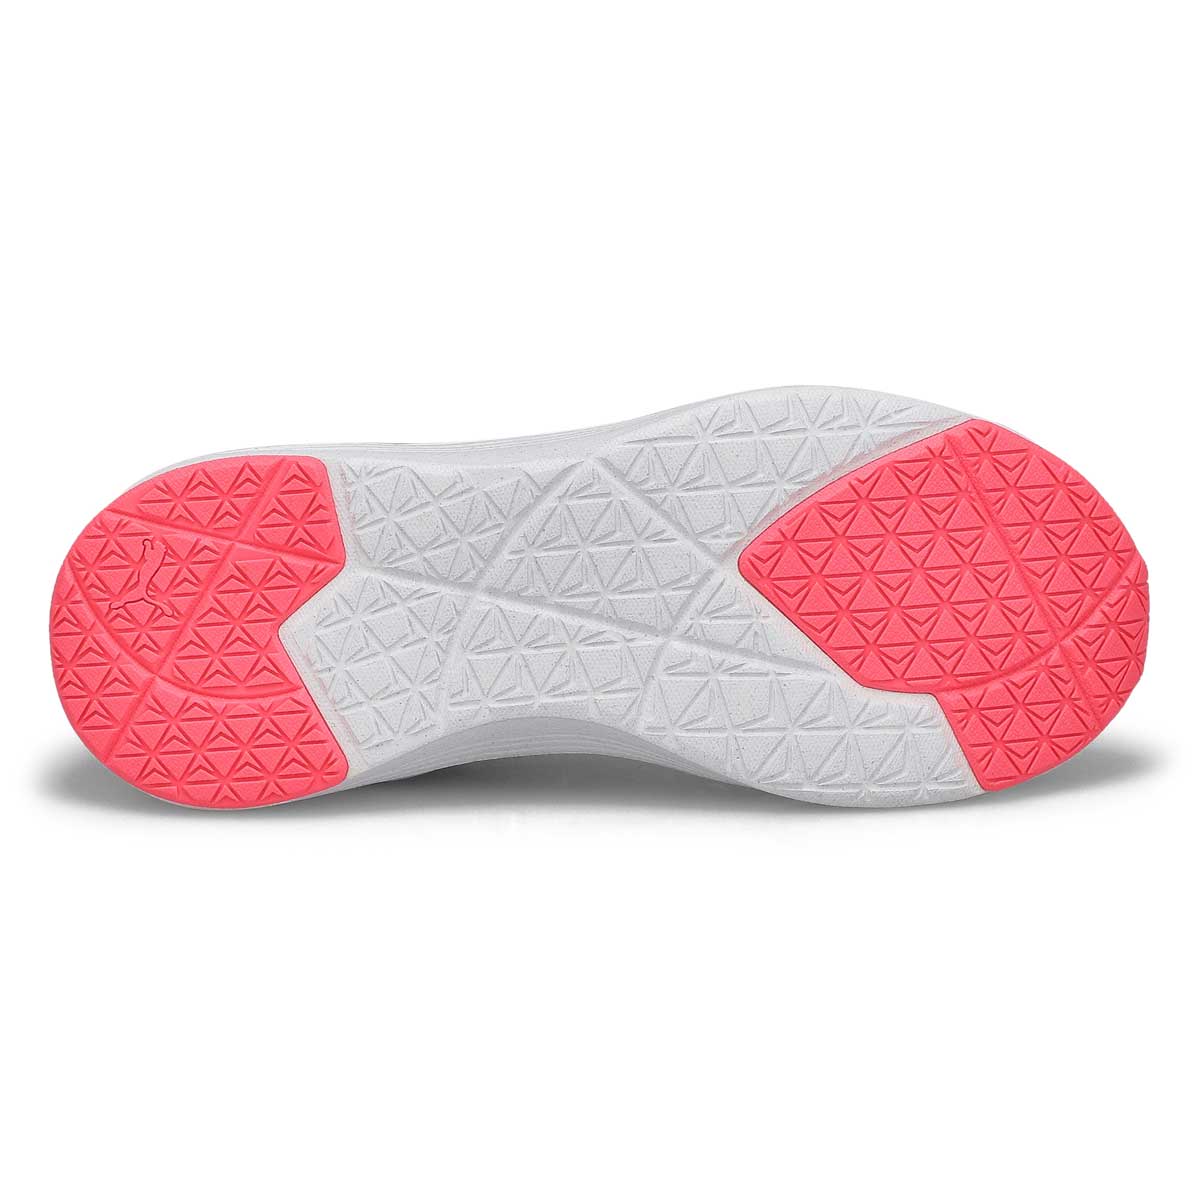 Women's Better Foam Prowl Slip On Sneaker - Black/Pink